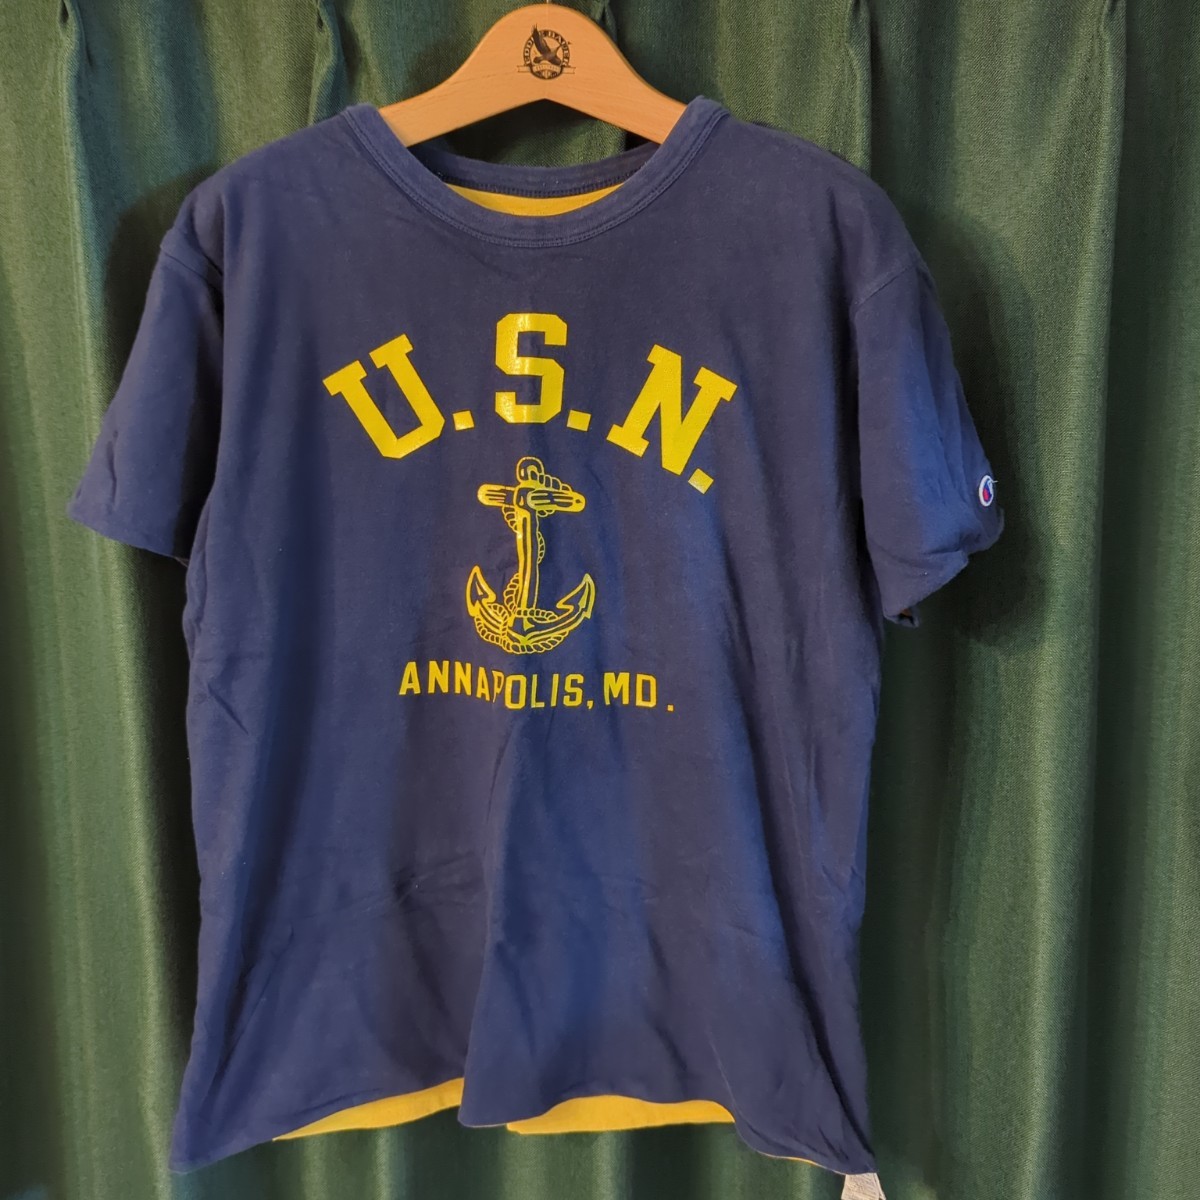 激レア チャンピオン USN リバーシブル Tシャツ M made in usa champion navy ネイビー アメリカ製 t1011 ミリタリー  リバースウィーブ